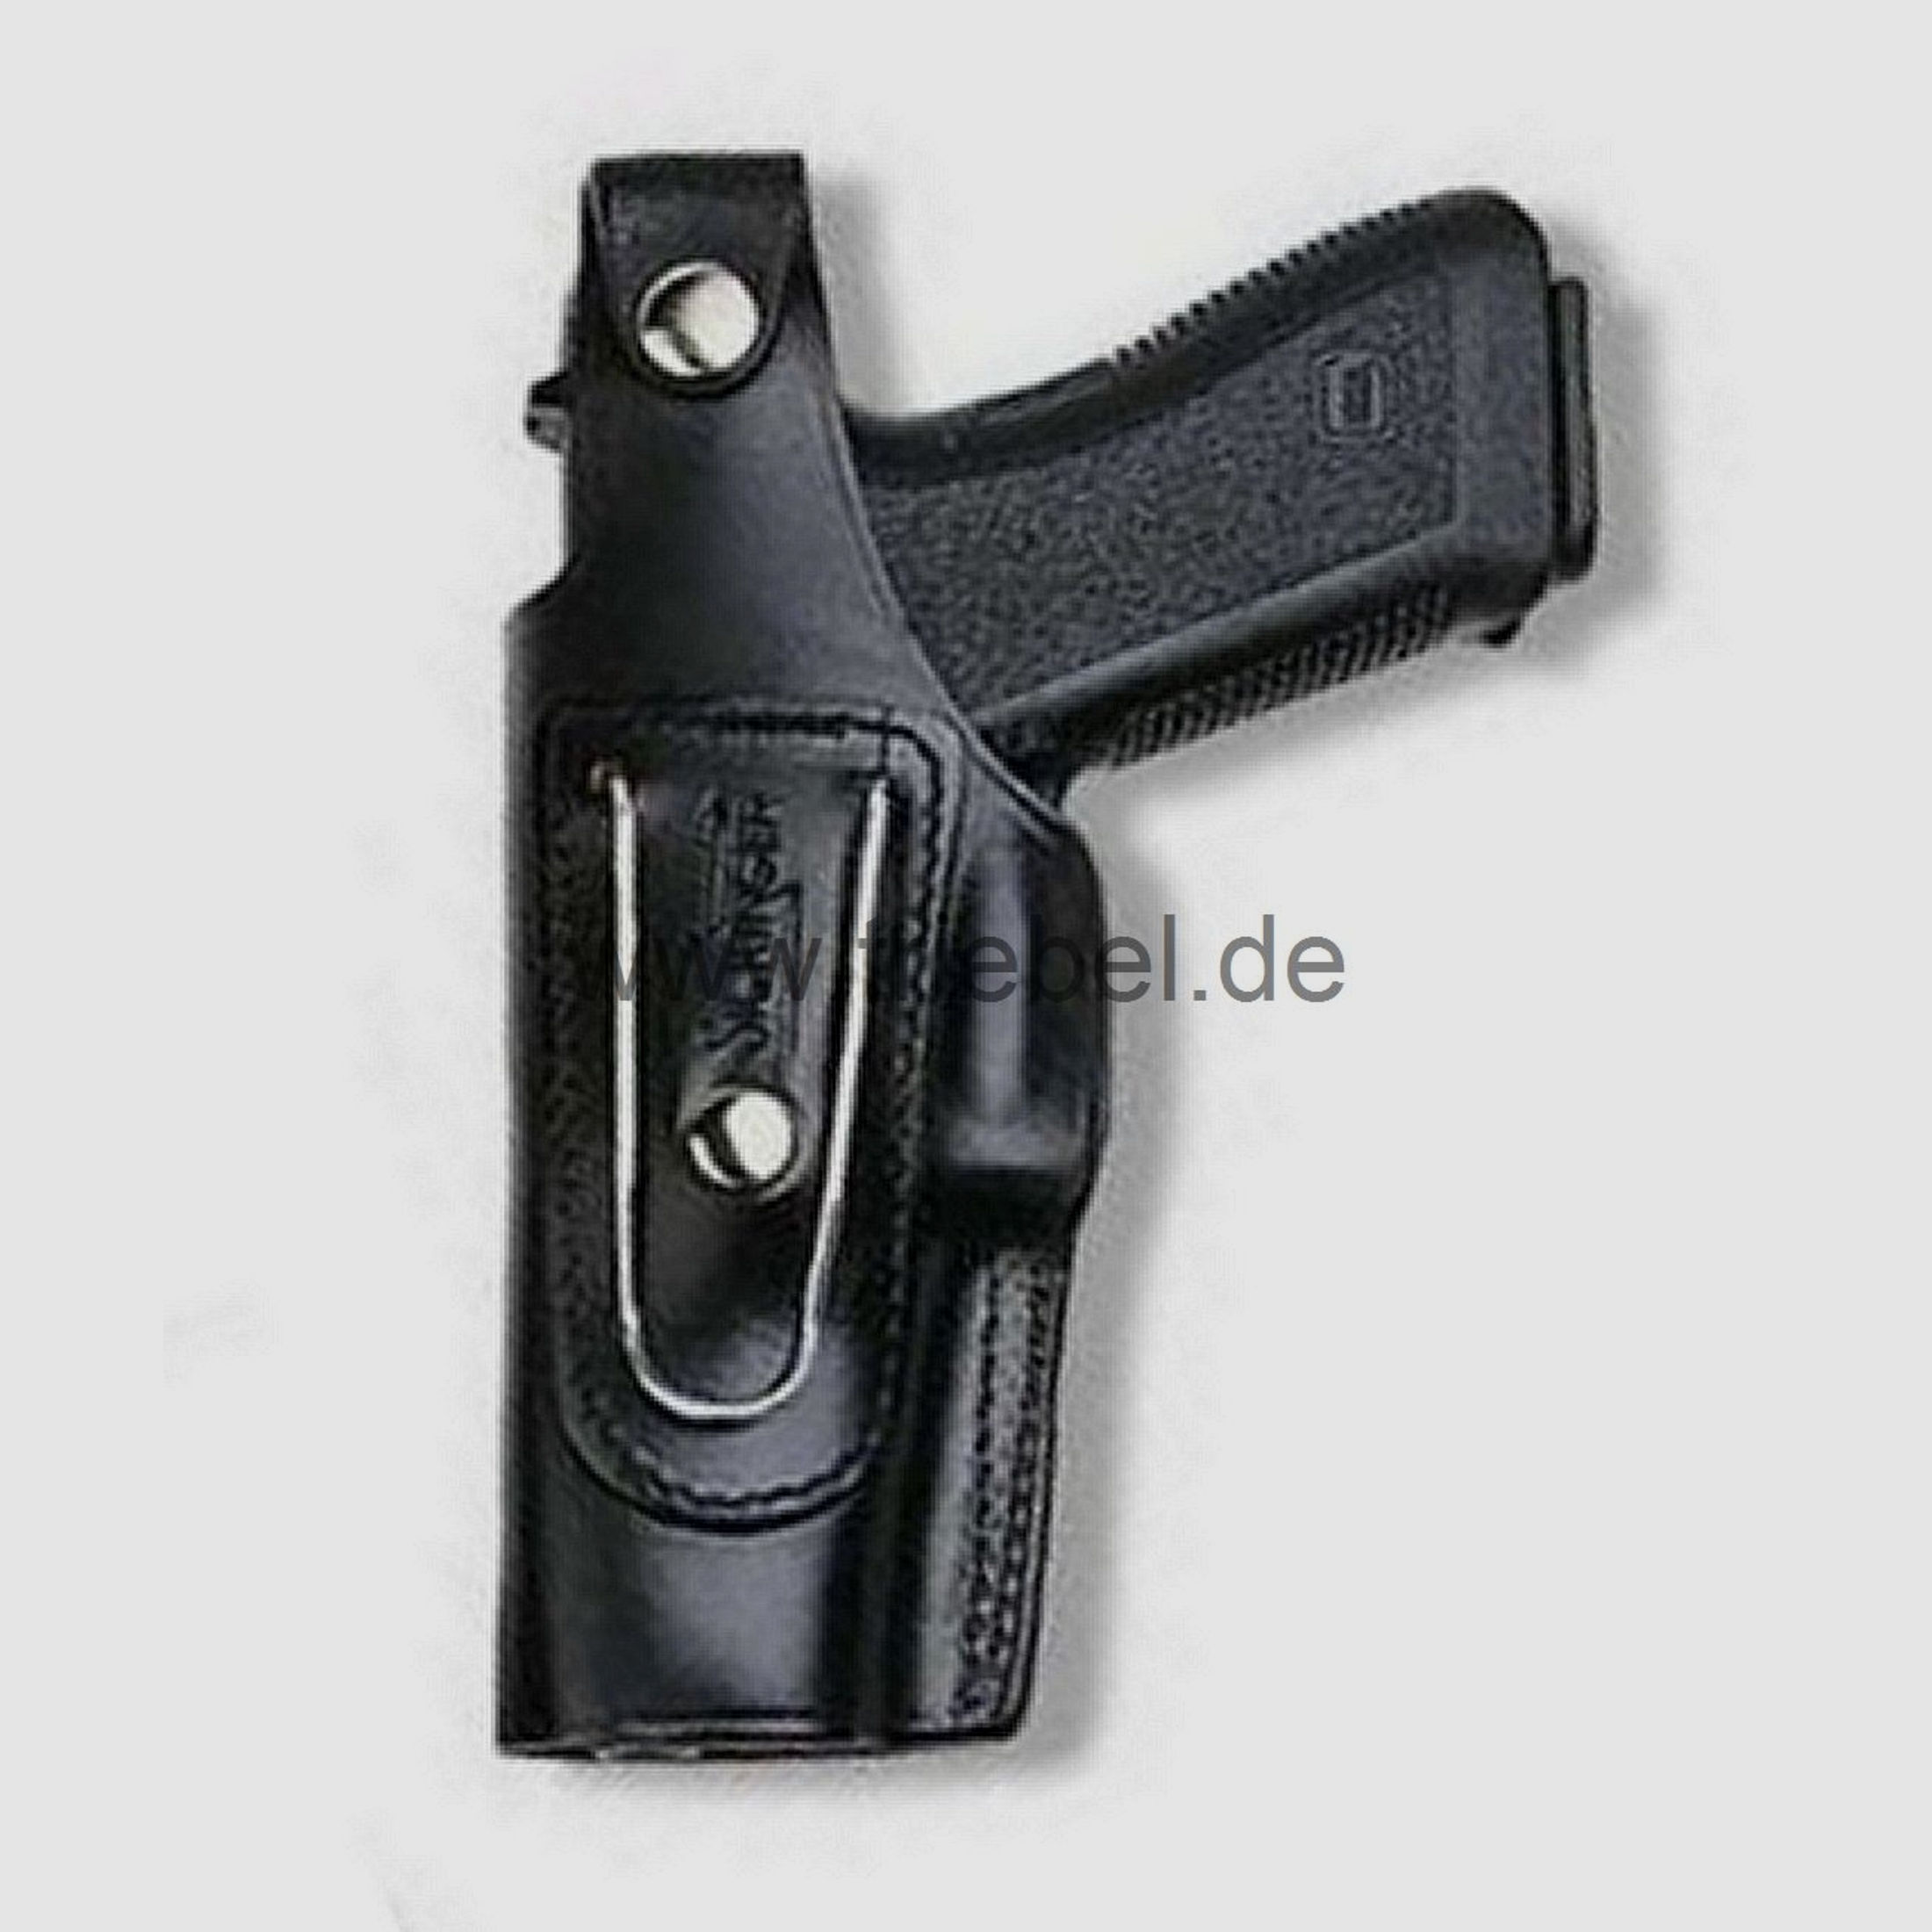 SICKINGER Holster (Leder) f. Glock 29/30 62357 -G-Man schwarz